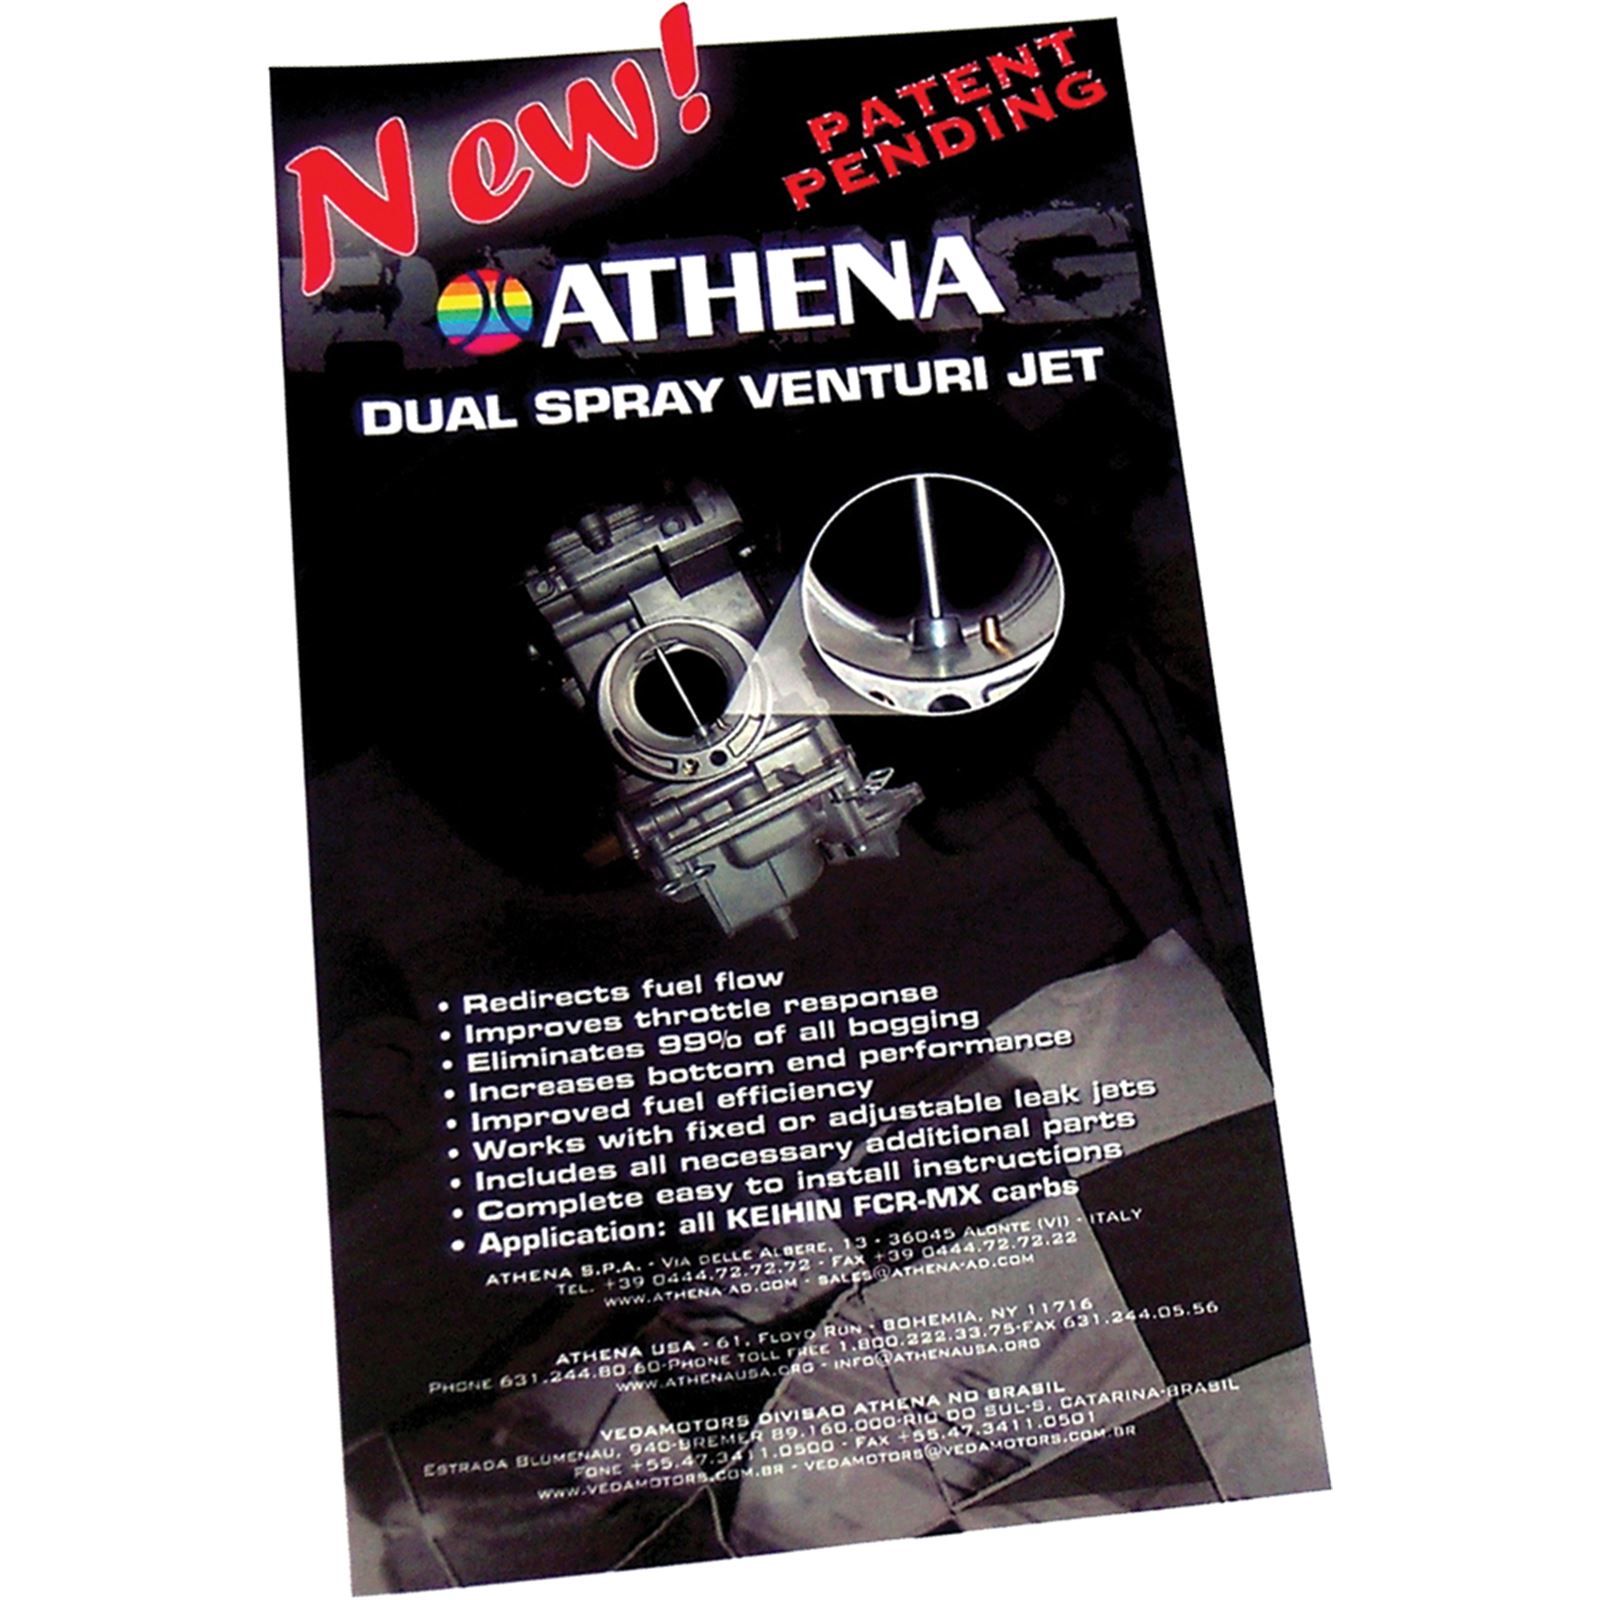 Athena Dual Spray Venturi Jet Kit Keihin FCR All